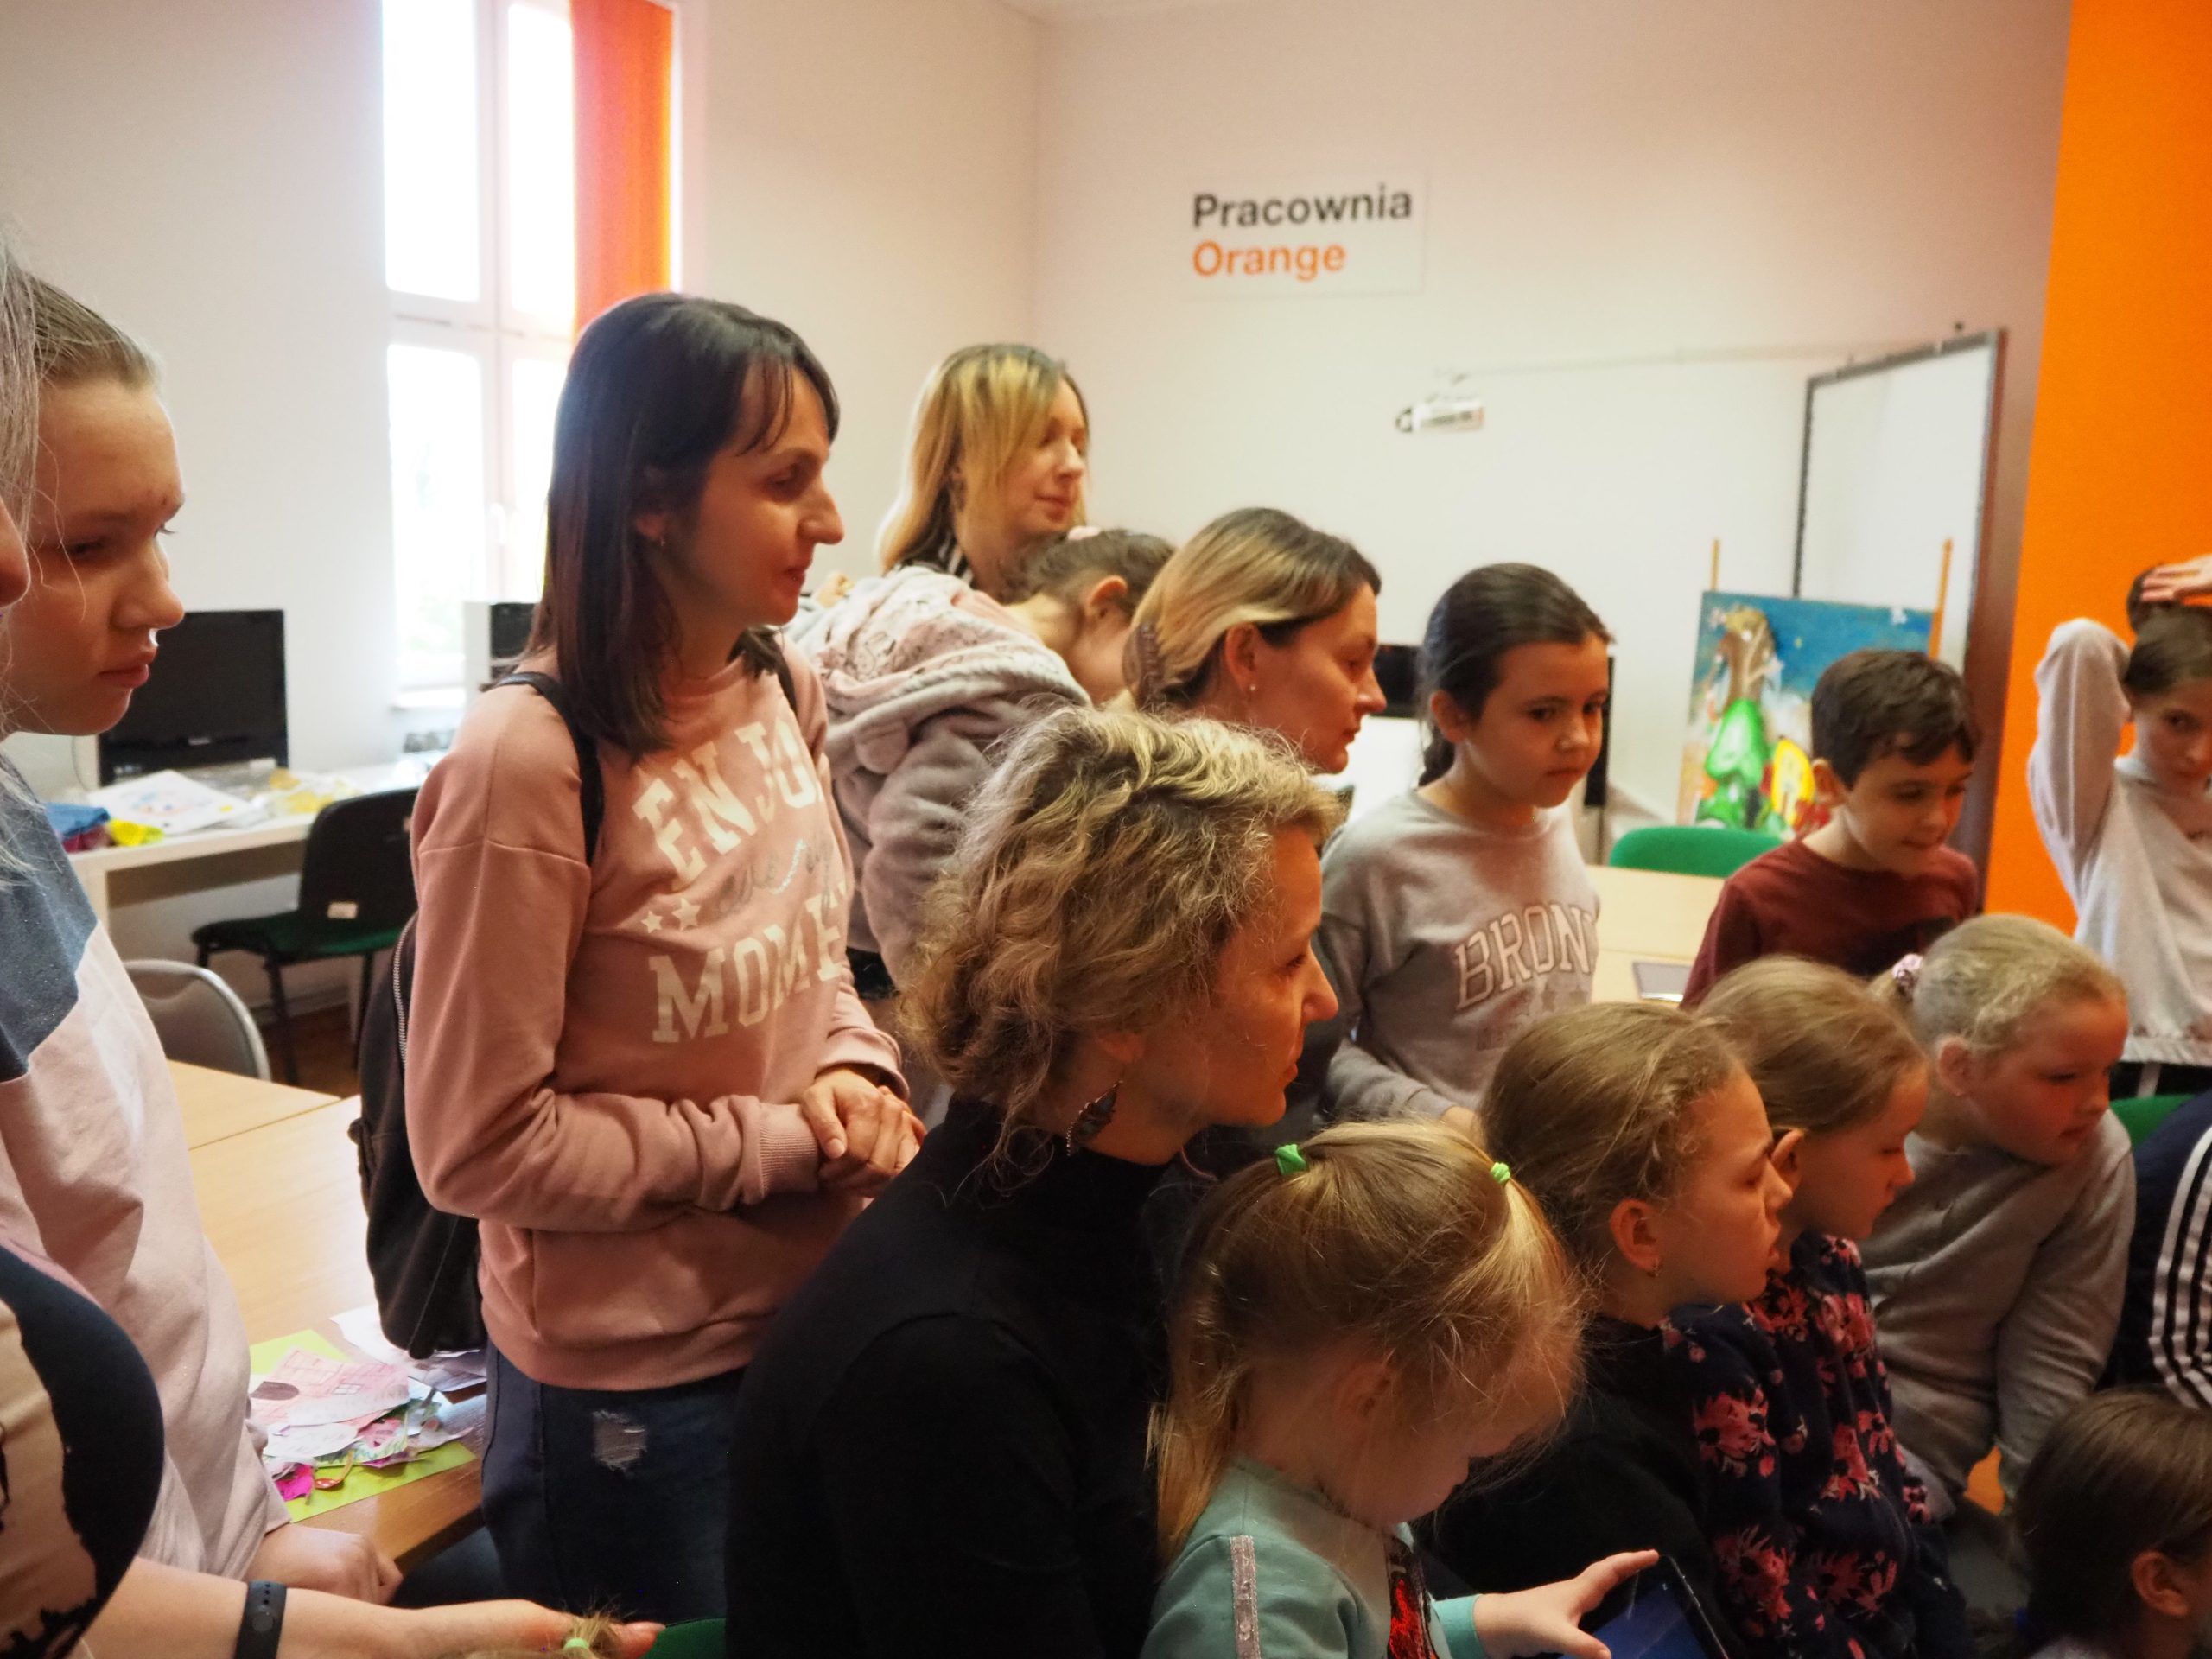 dzieci i cztery dorosłe kobiety w pracowni orange siedzą w grupie